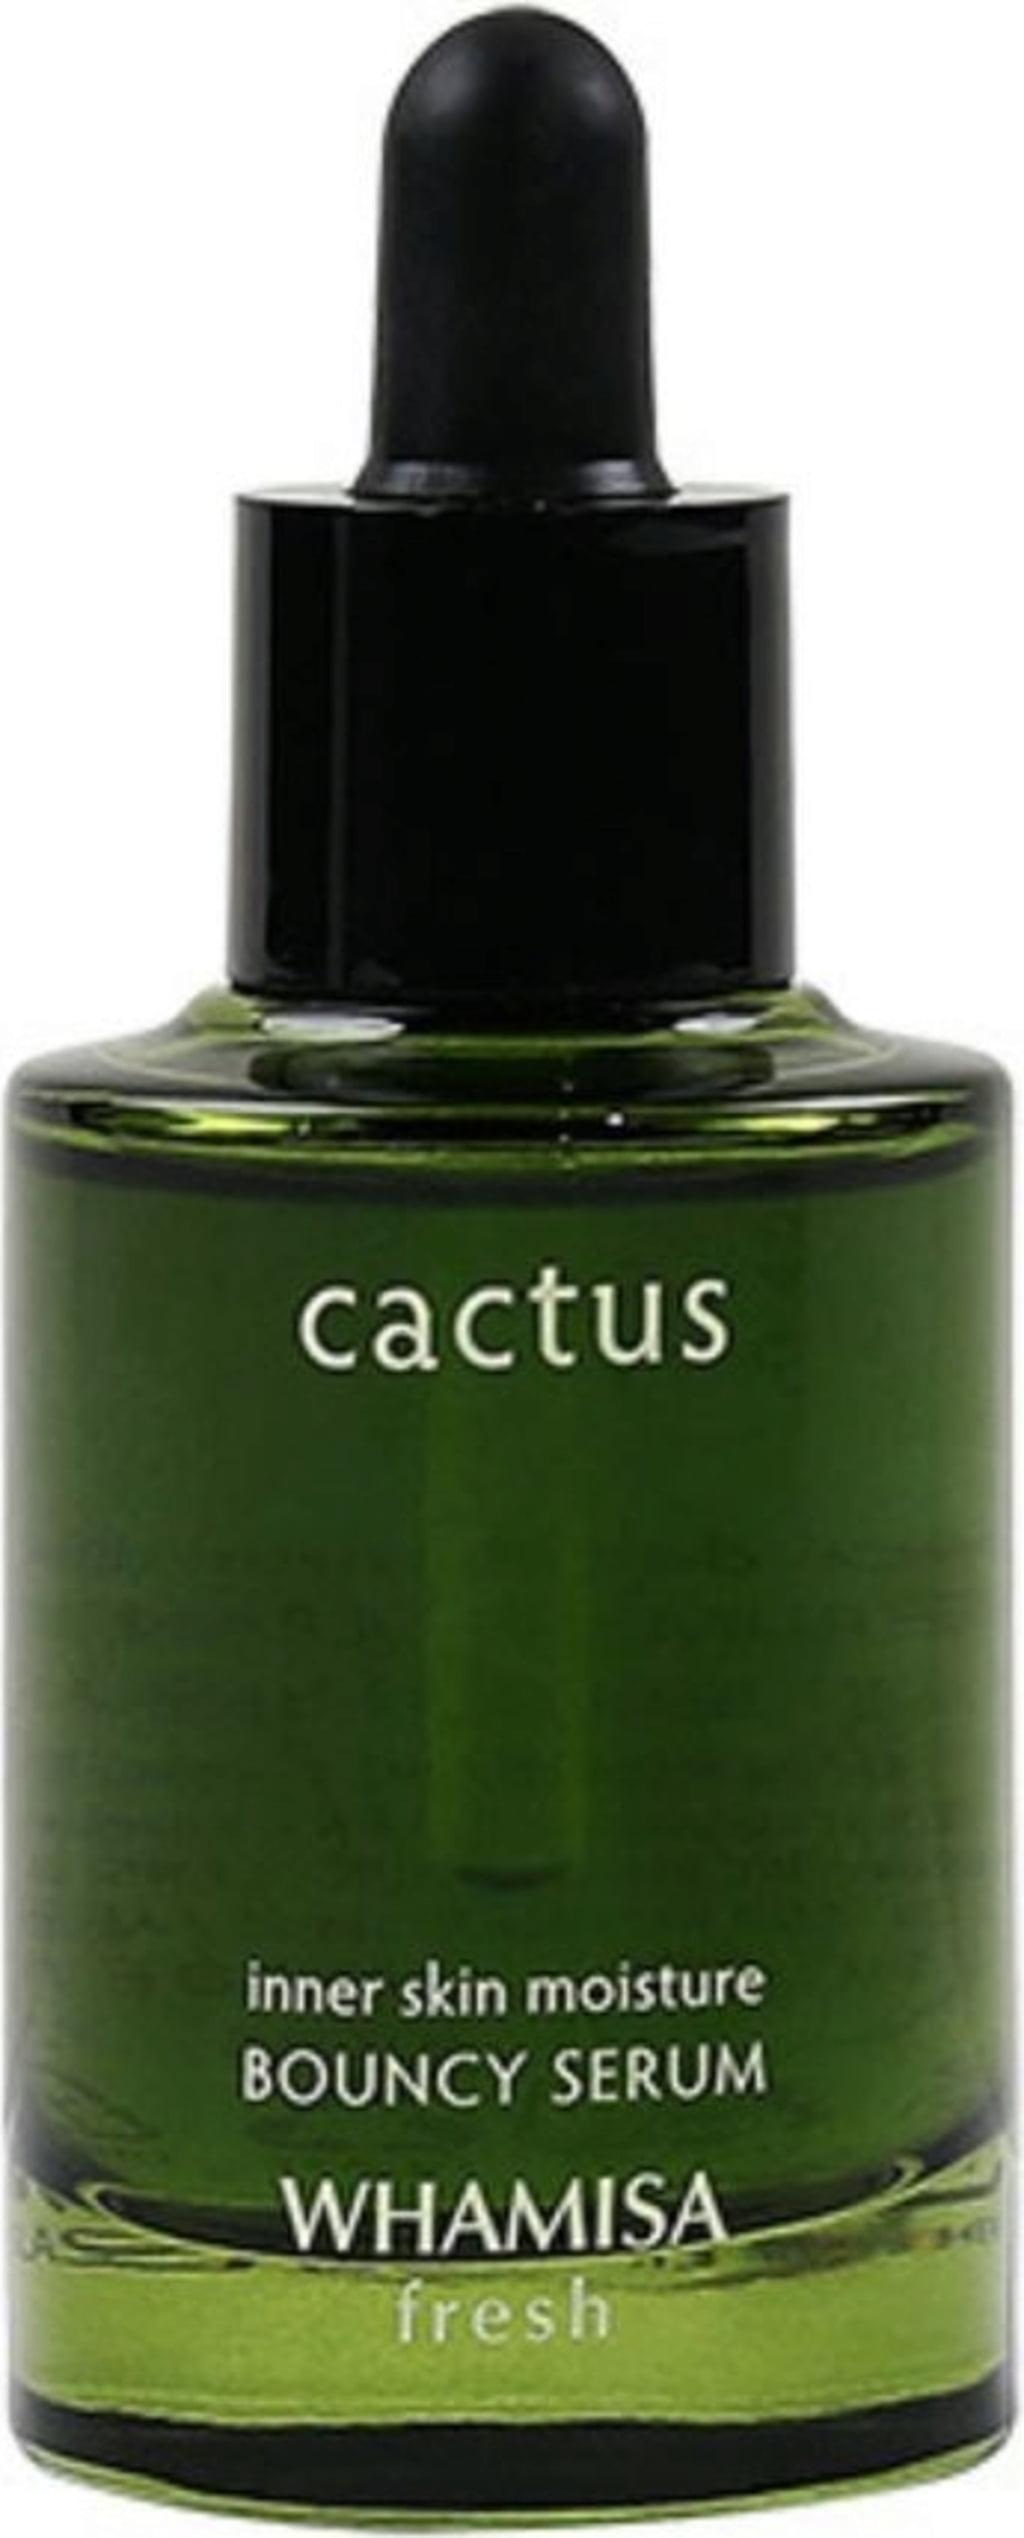 Fresh Cactus Bouncy Serum 33 ml